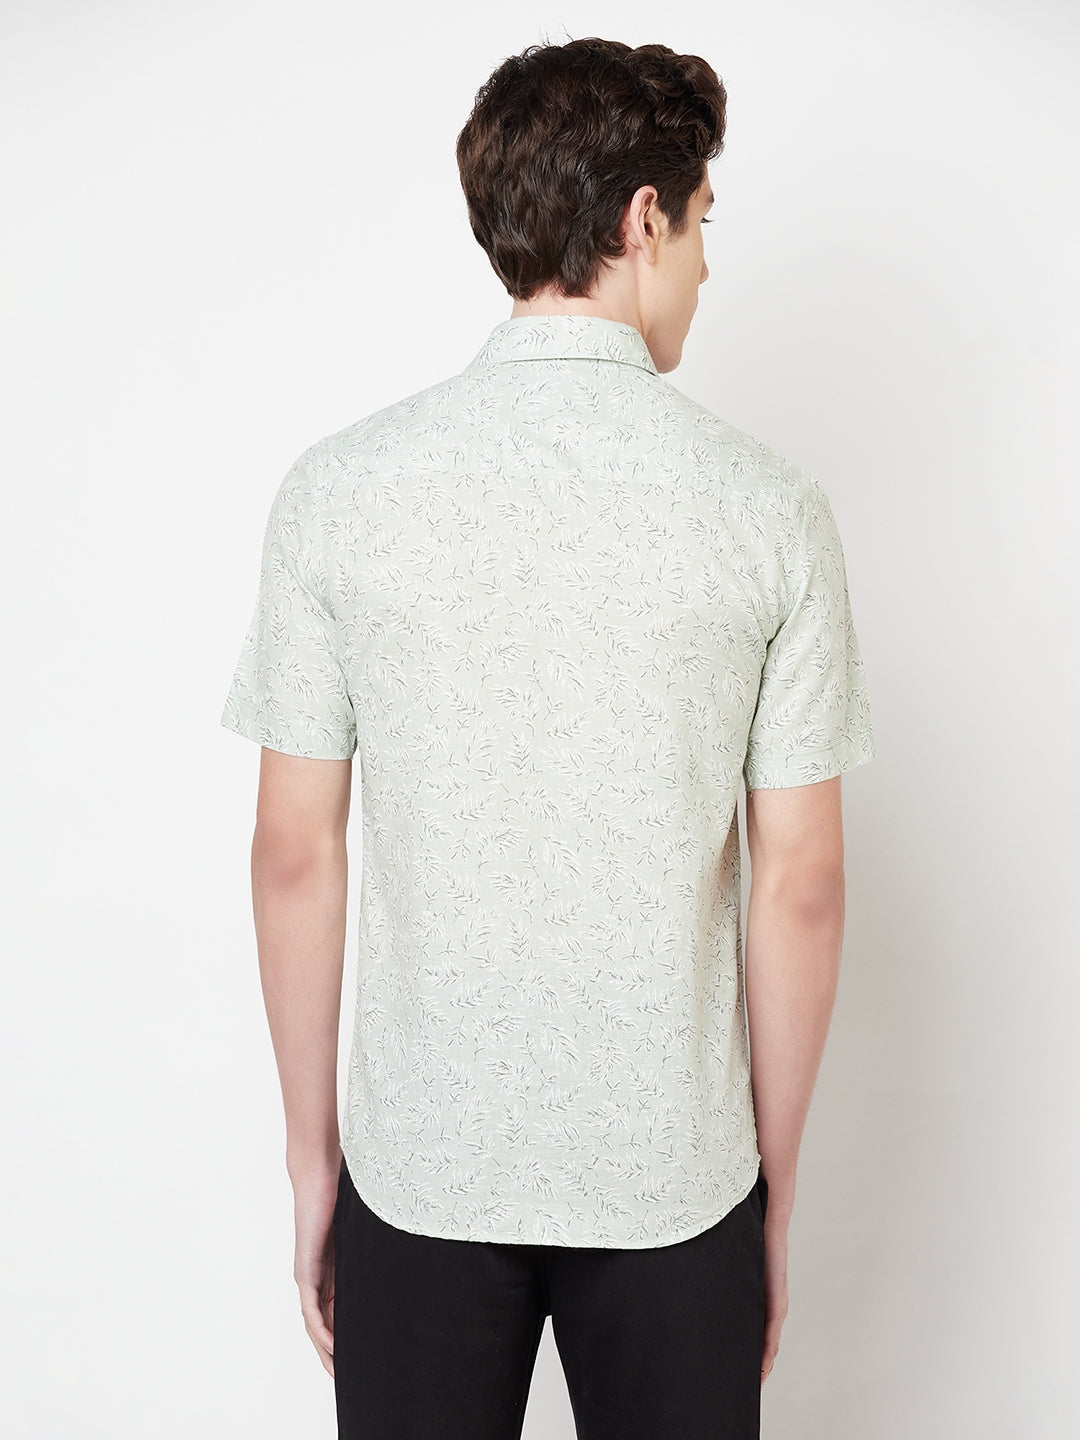 Mint Green Floral Linen Shirt - Men Shirts